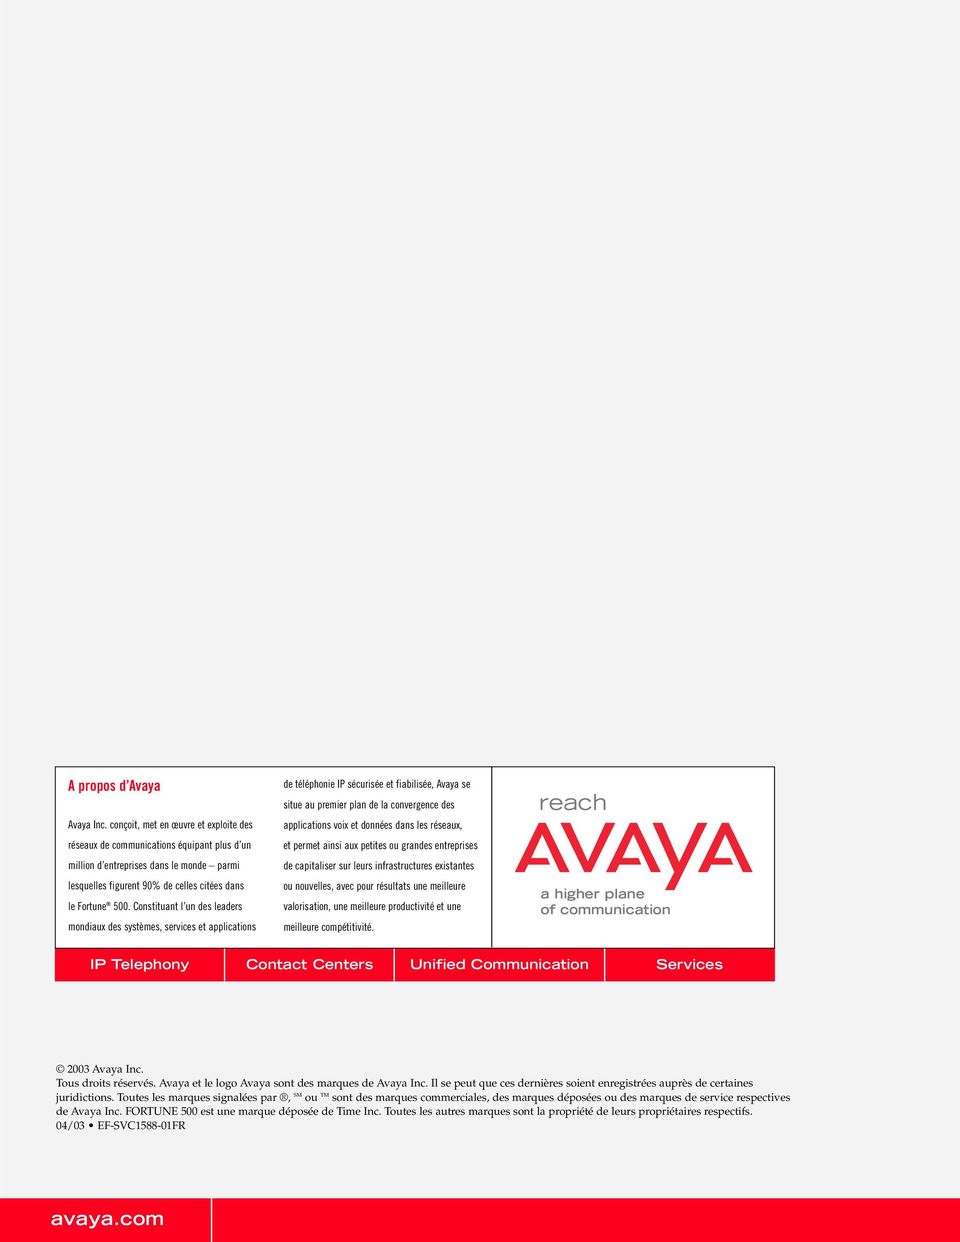 Constituant l un des leaders mondiaux des systèmes, services et applications de téléphonie IP sécurisée et fiabilisée, Avaya se situe au premier plan de la convergence des applications voix et